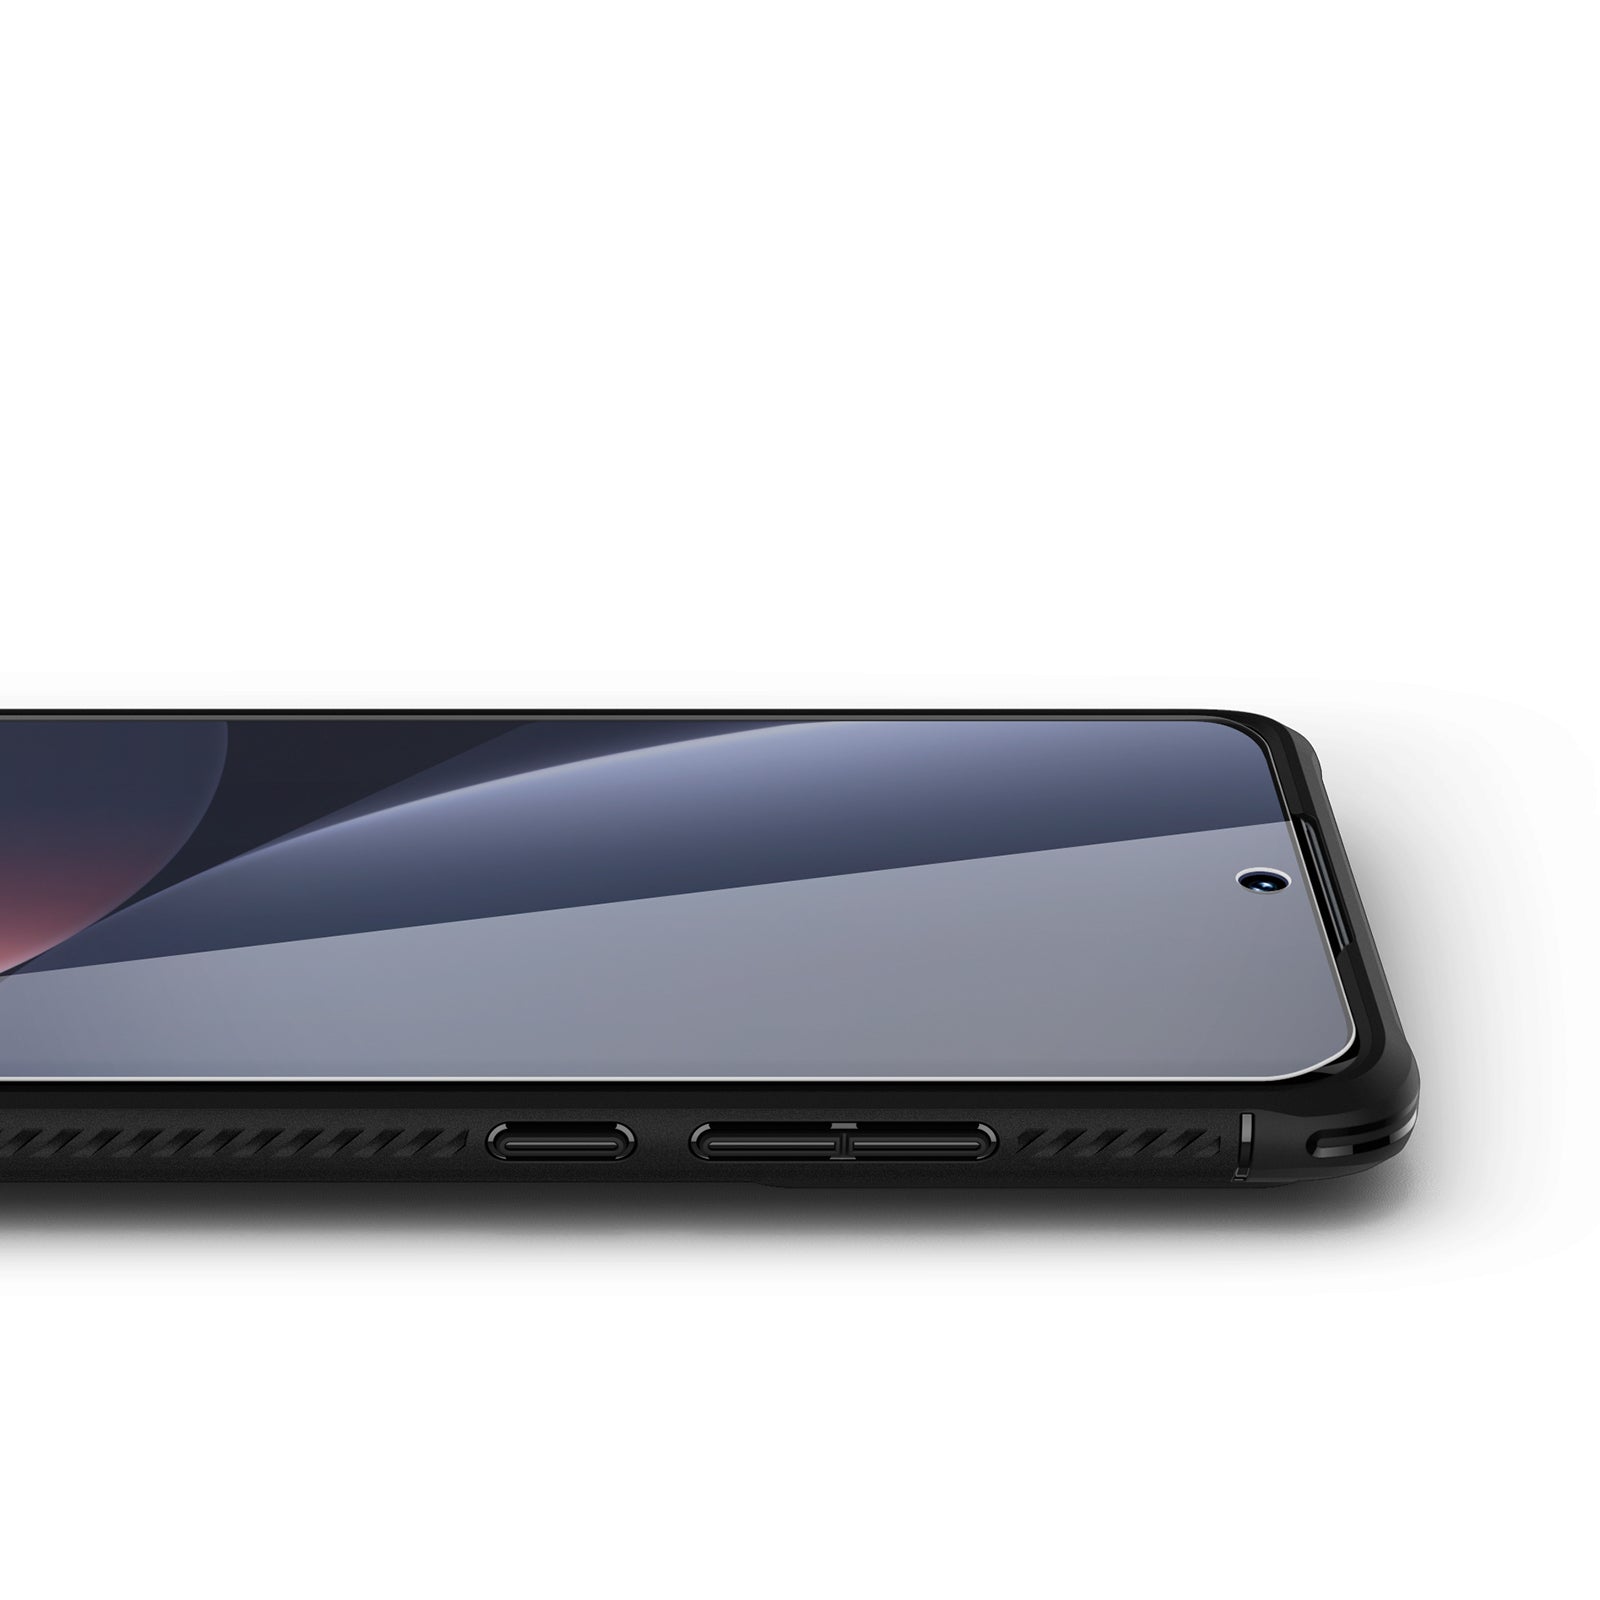 Folie für die Schutzhülle Spigen Neo Flex 2-Pack für Xiaomi 12 / 12X